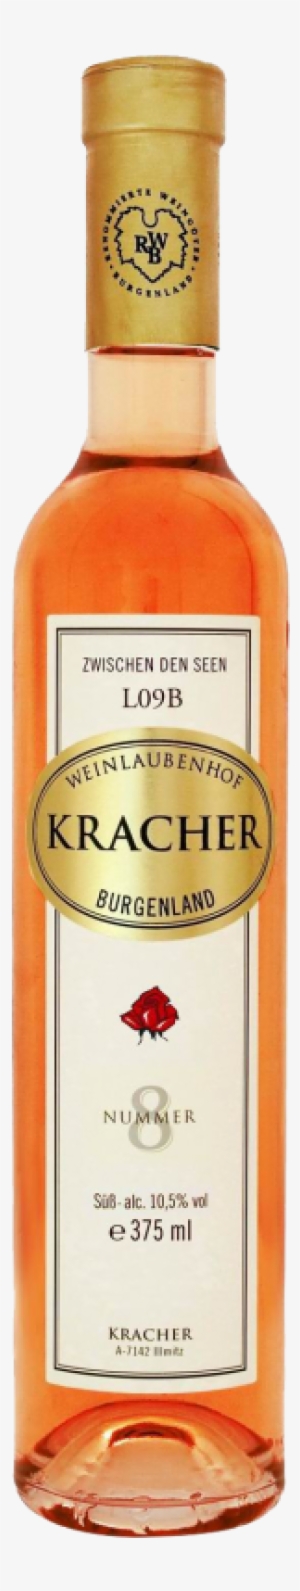 Rosenmuskateller No - - Kracher Grande Cuvee Tba #6 Nouvelle Vague